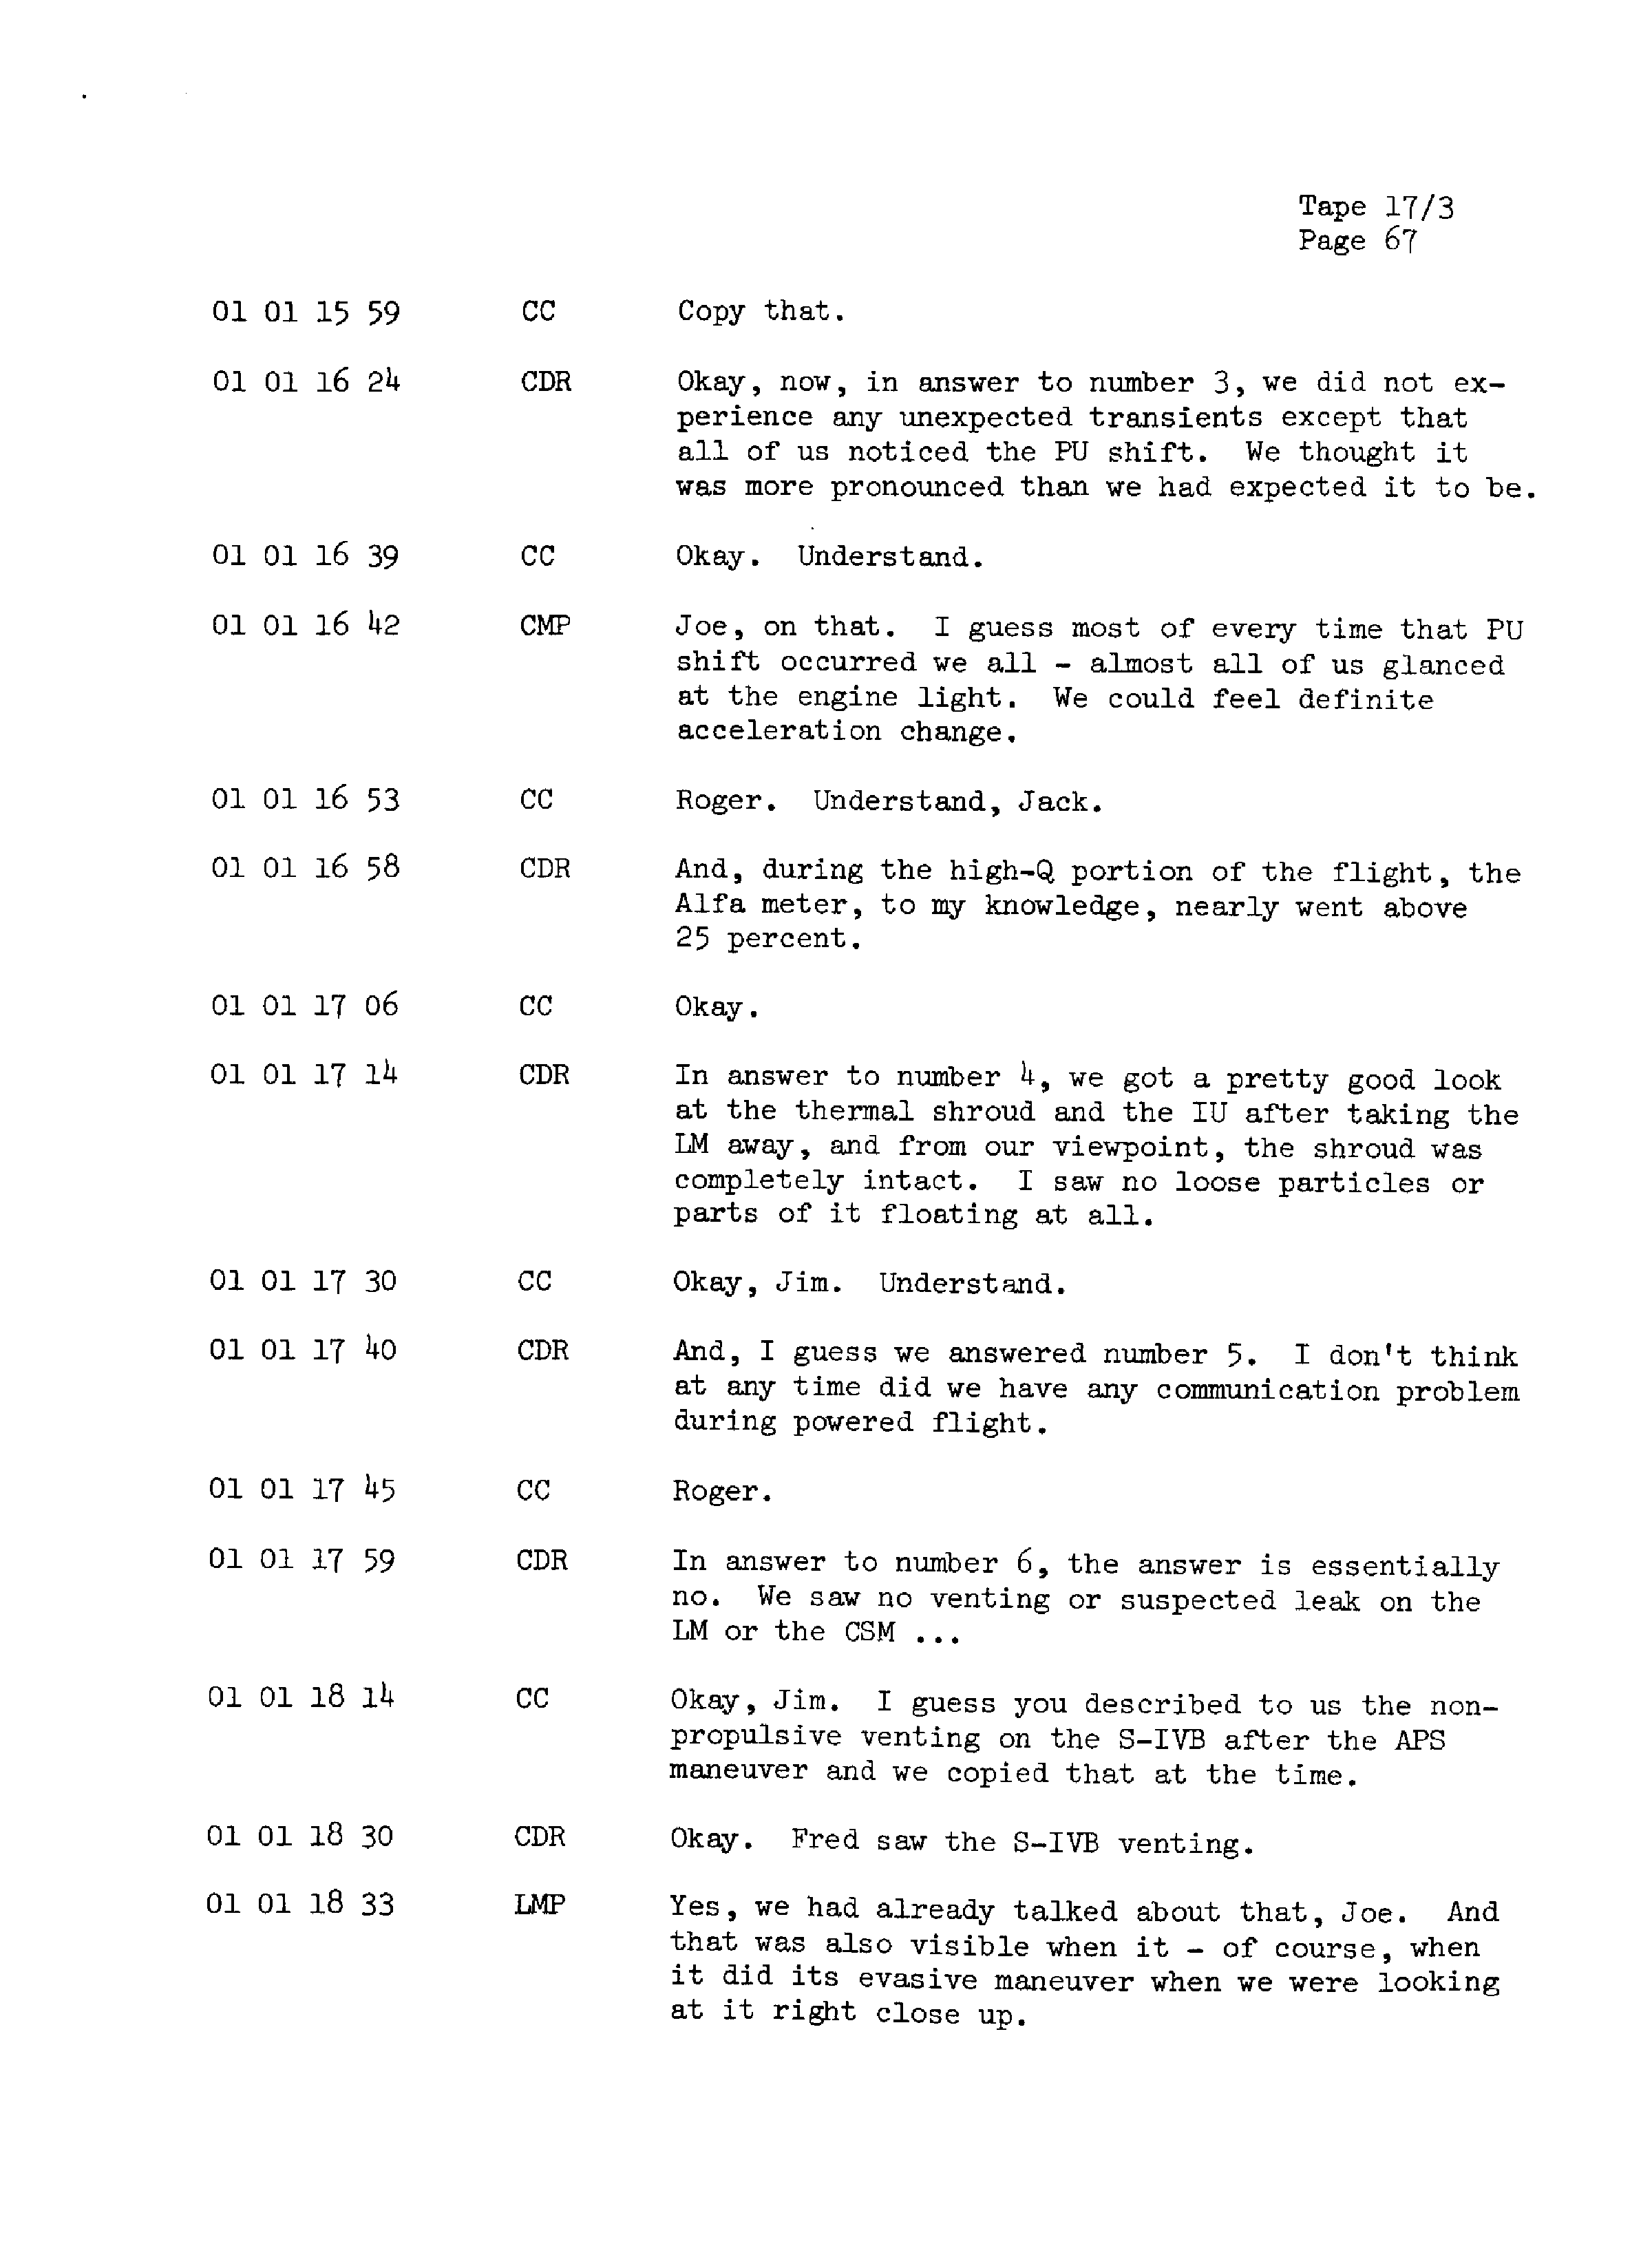 Page 74 of Apollo 13’s original transcript